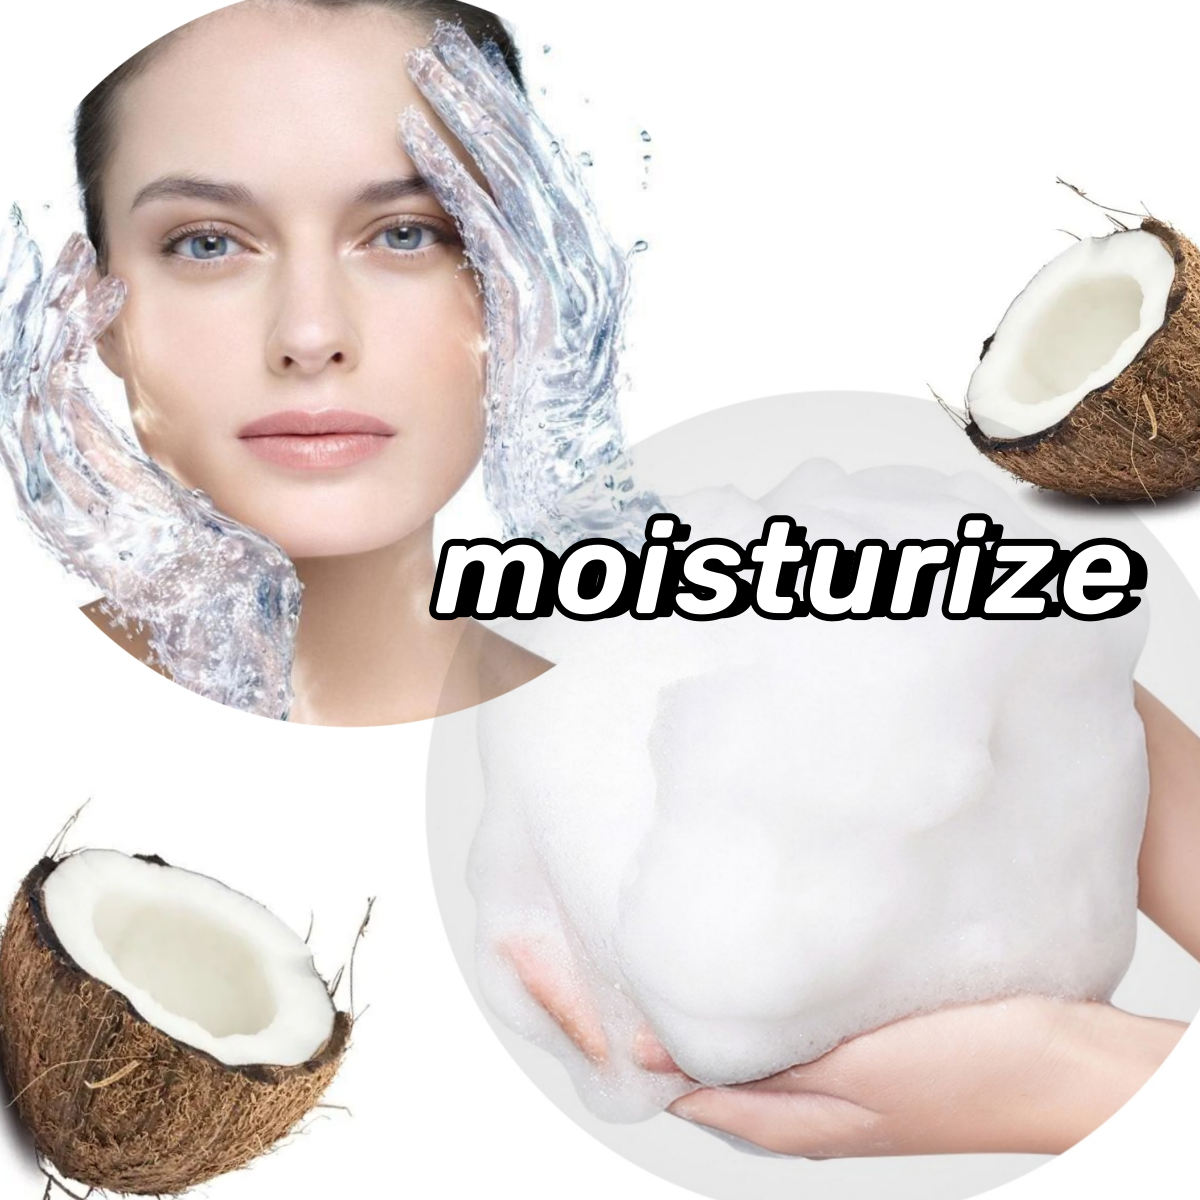 Cocoil glutamato de sódio: um surfactante suave e eficaz para a pele